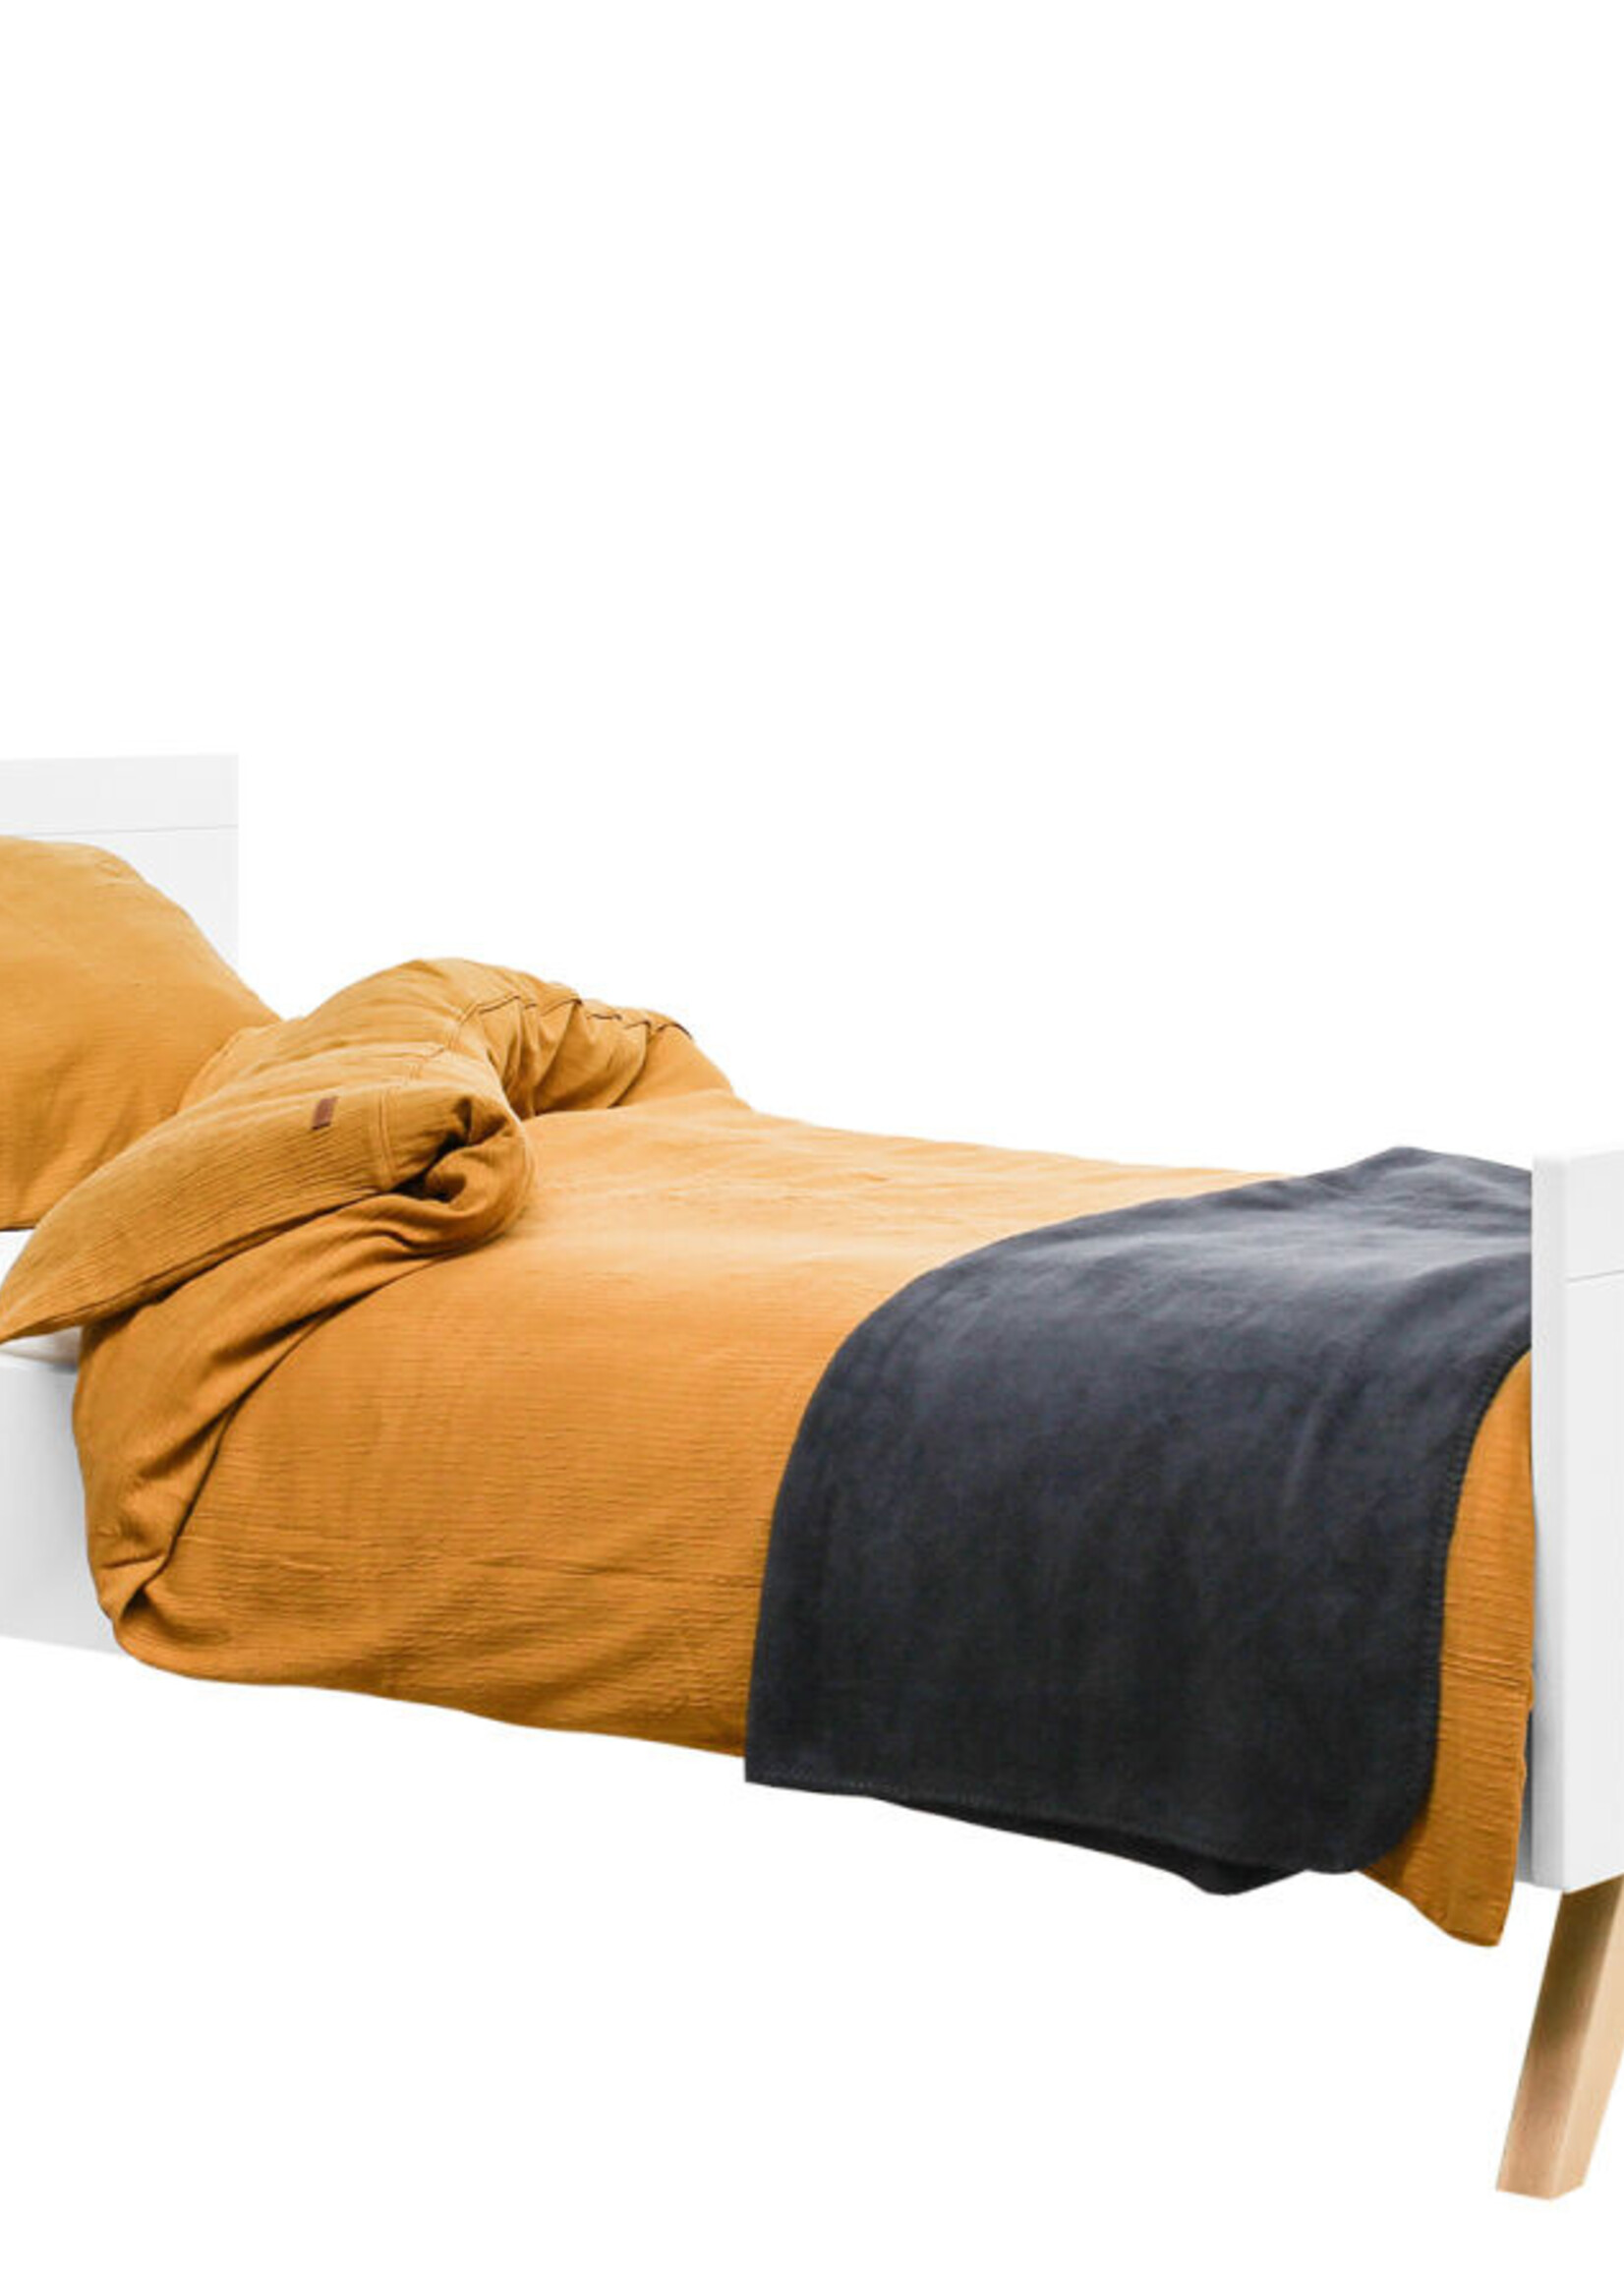 BOPITA Bed 90x200cm Fenna white / natural